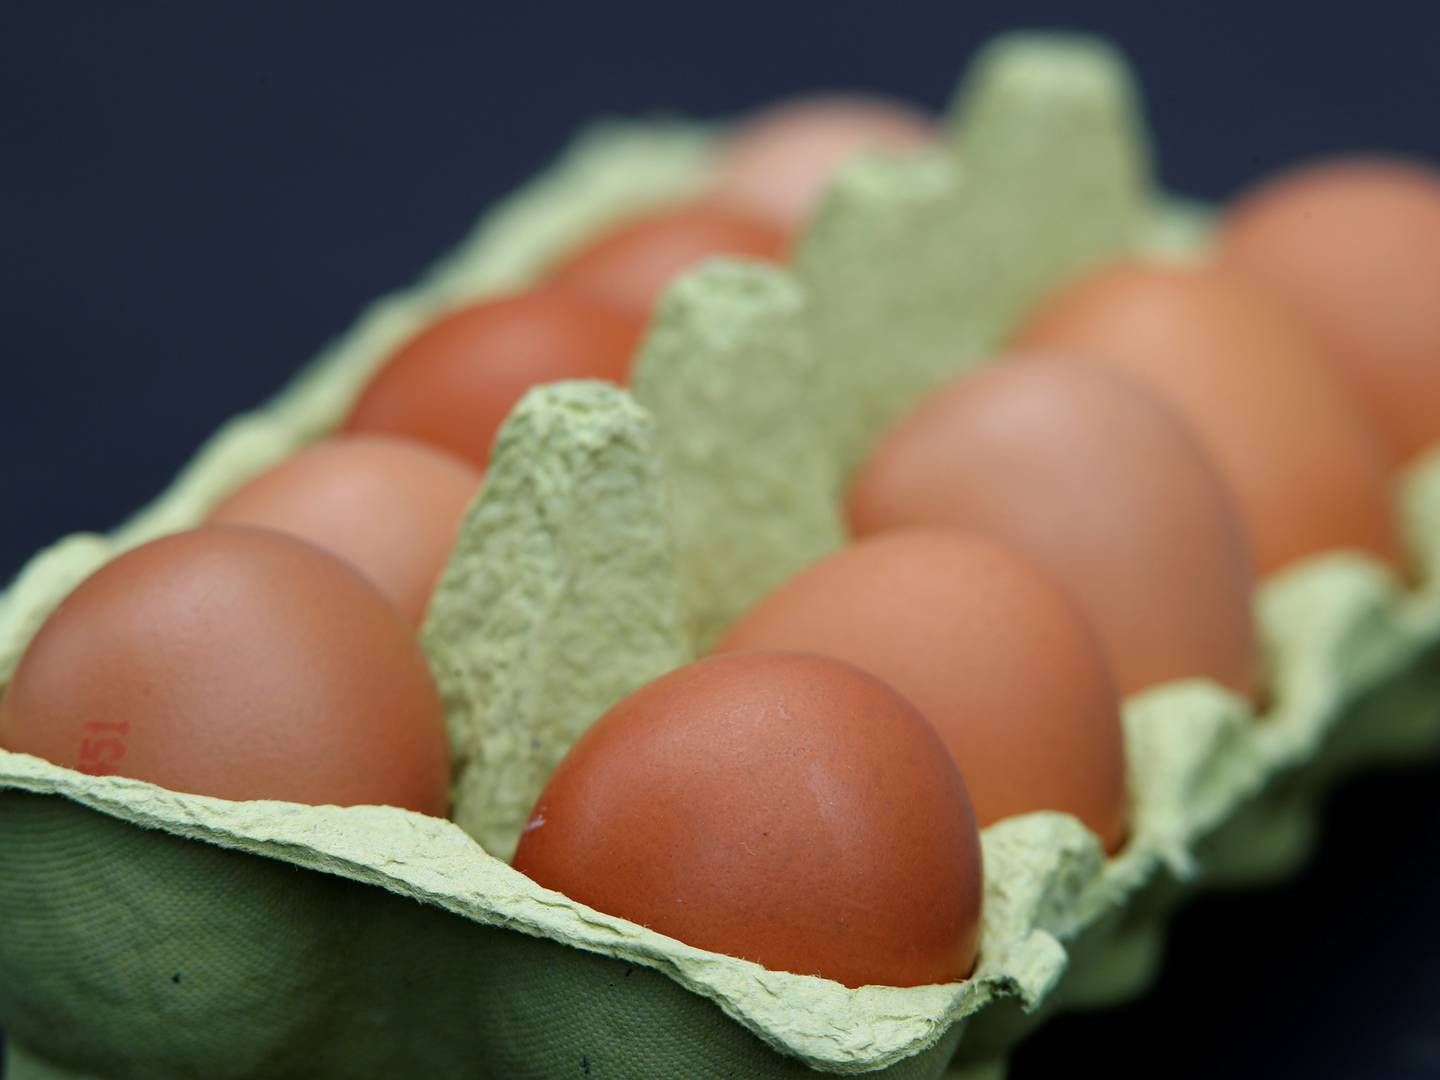 I en enkelt prøve fra æg blev der fundet rester af et fodertilsætningsstof. | Foto: Wolfgang Rattay/Reuters/Ritzau Scanpix